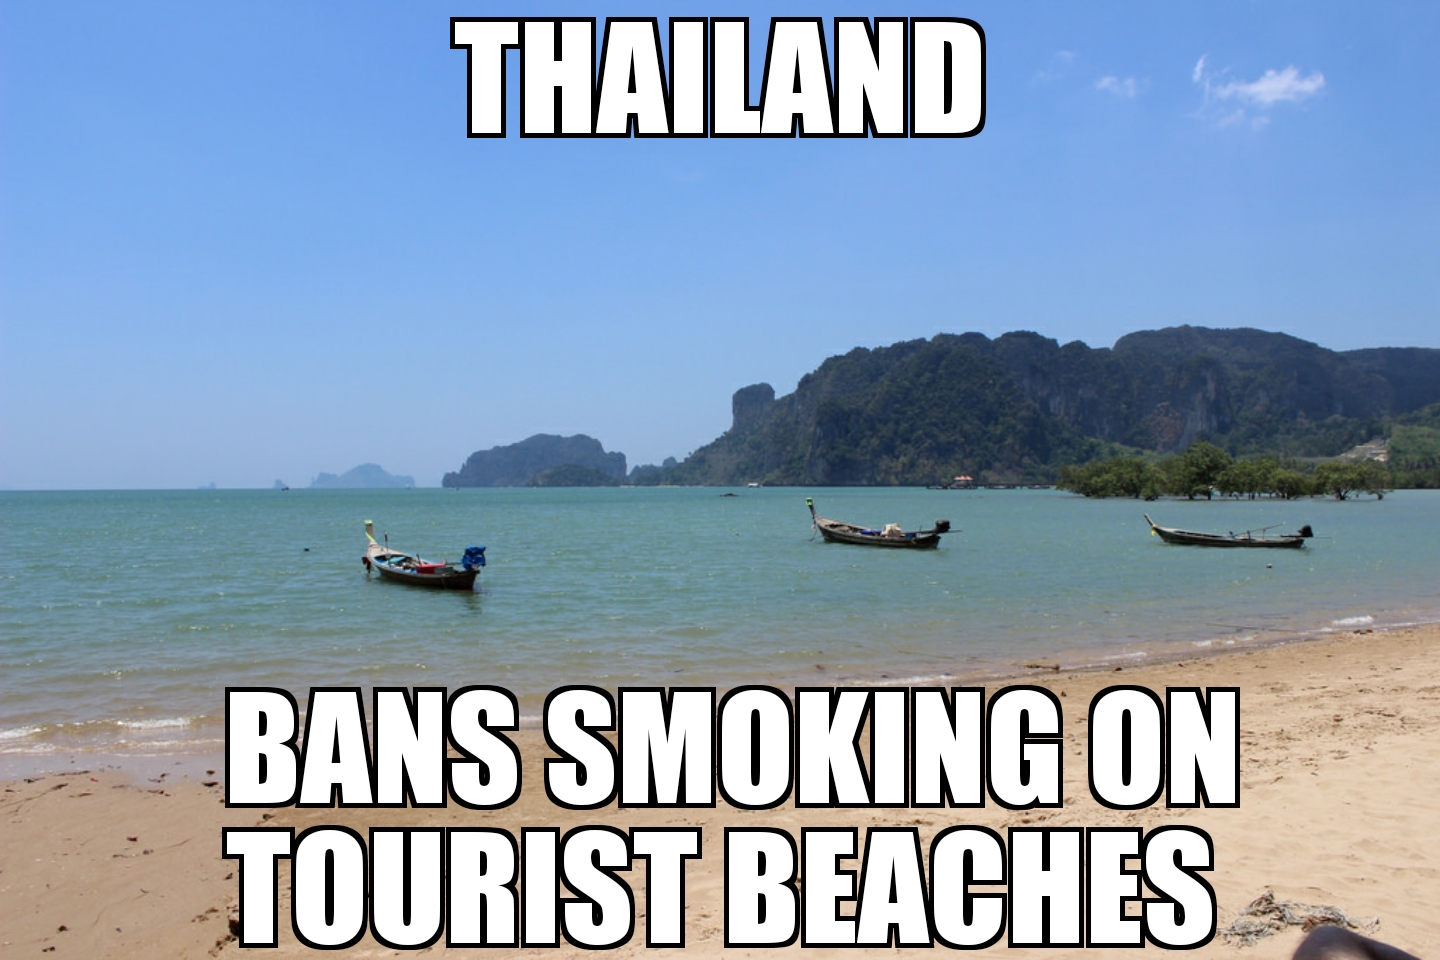 Thailand bans smoking on tourist beaches